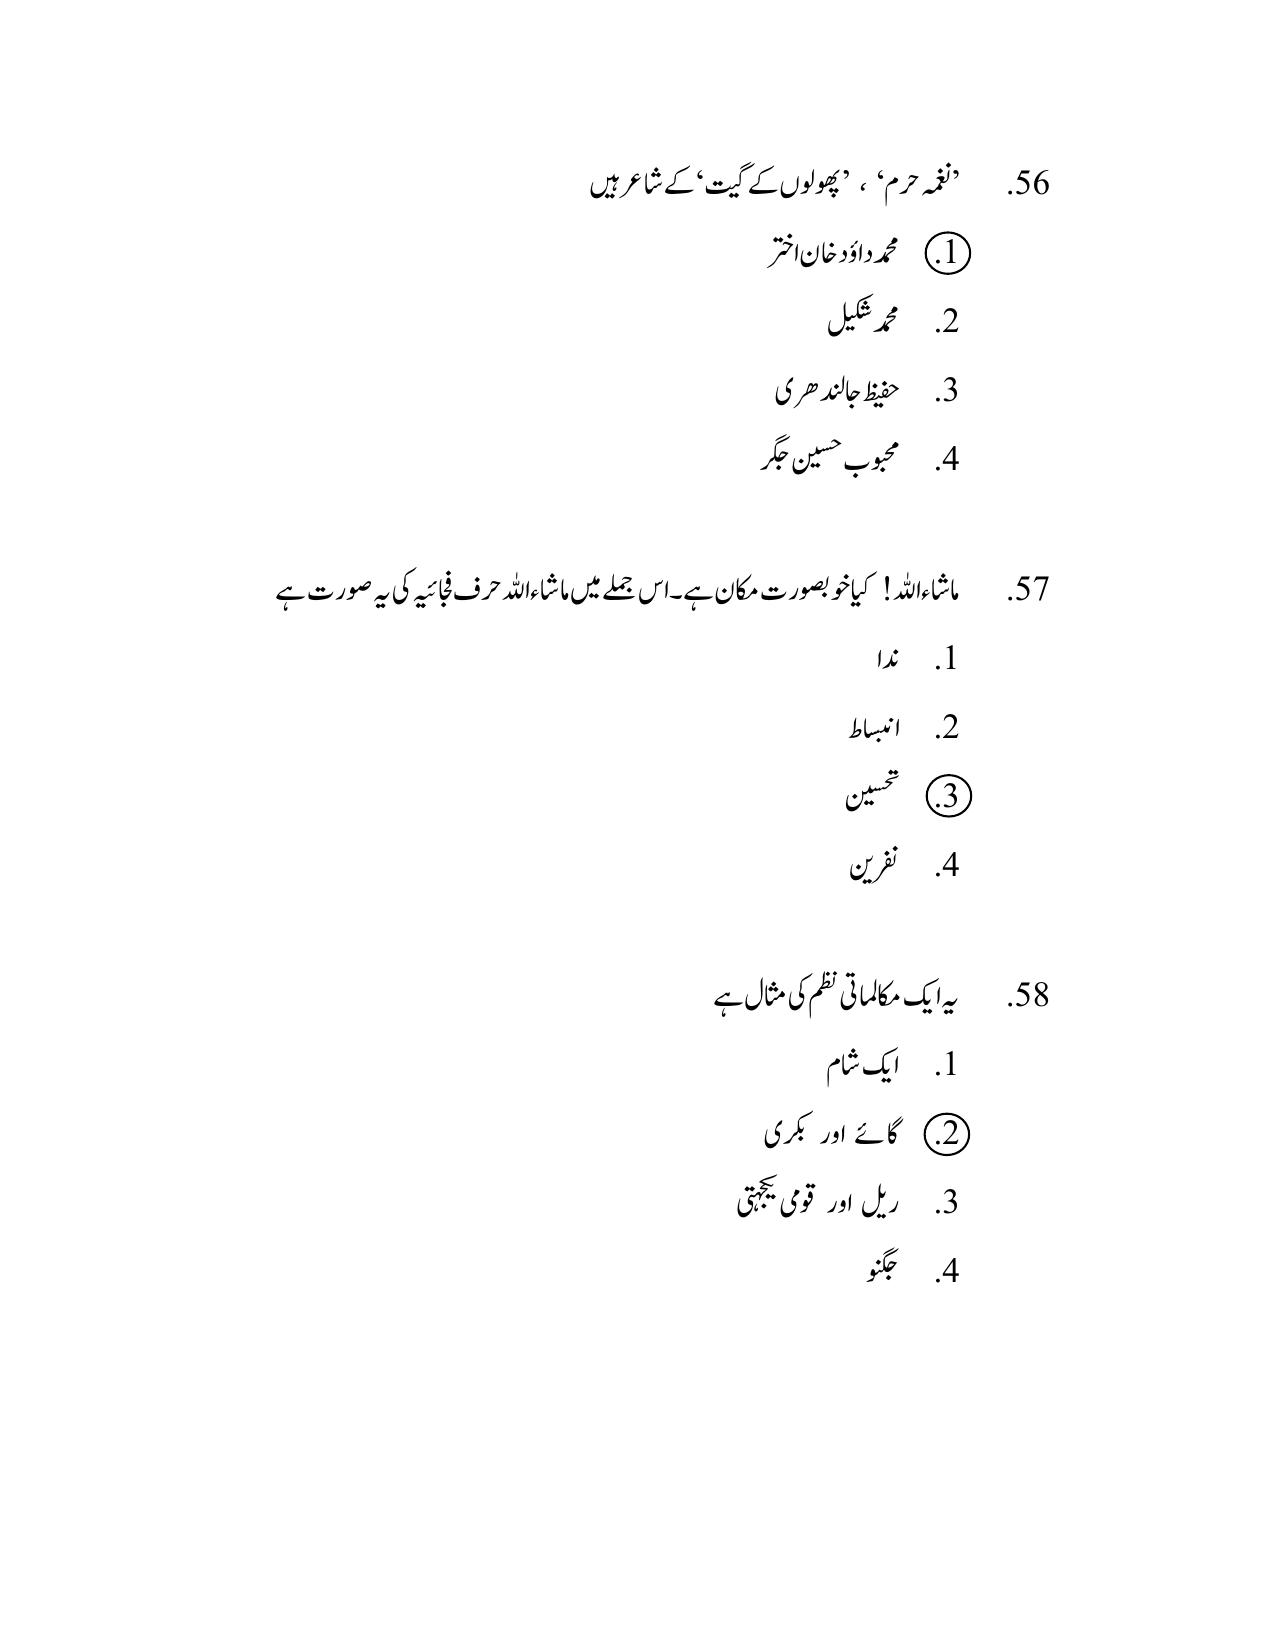 AP DSC SGT Urdu S1 Previous 2019 Question Paper PDF - Page 30